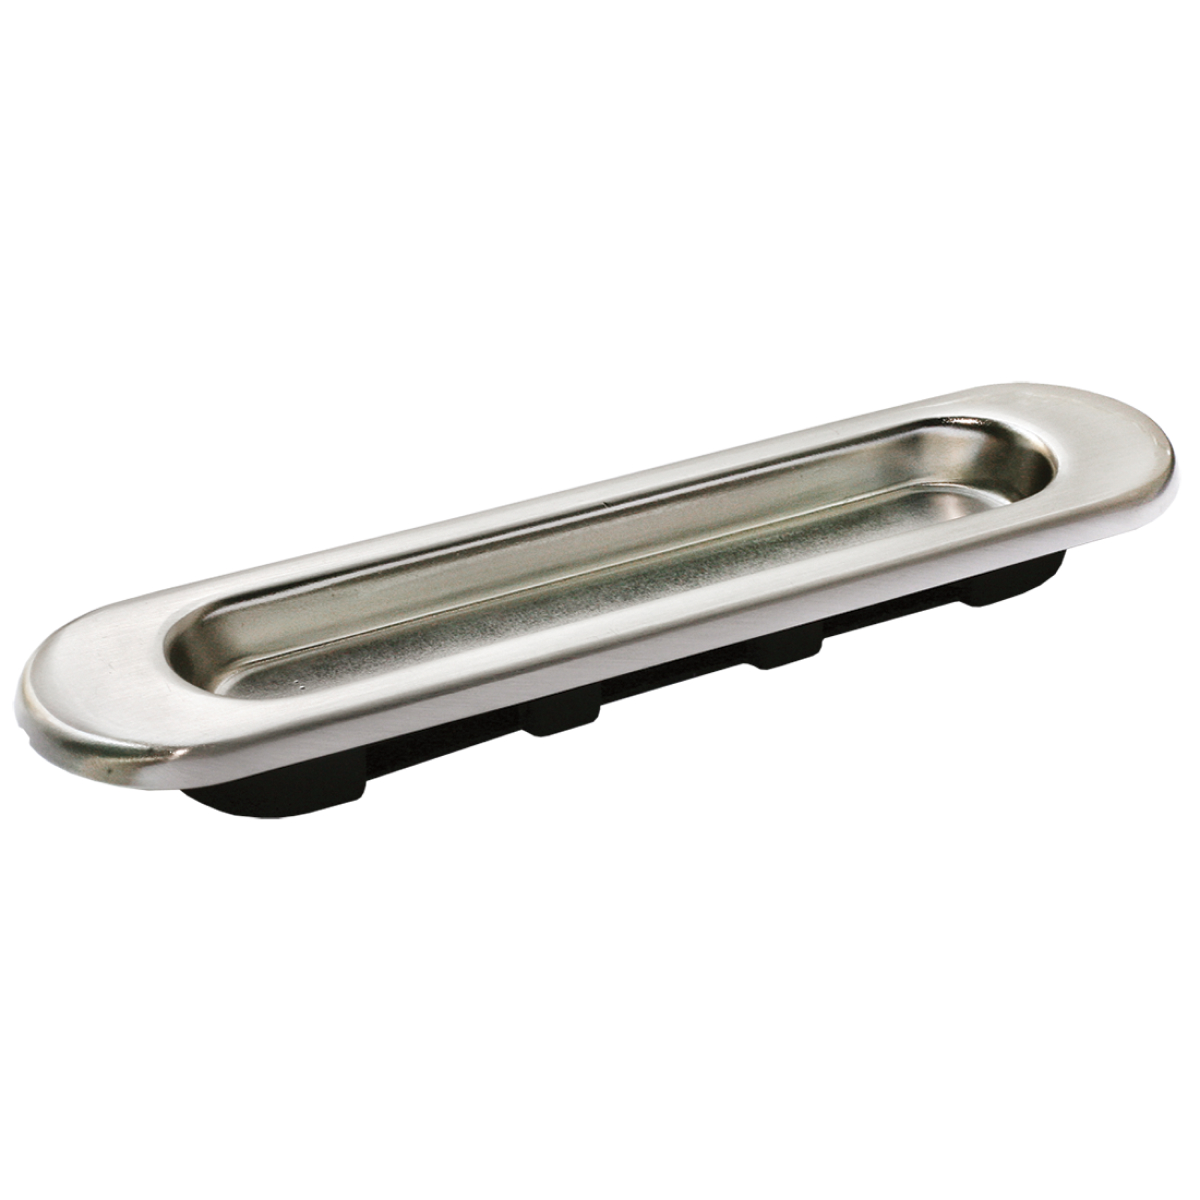 Ручка для раздвижной двери Optima Porte Ручка для раздвижных дверей MHS150 SN (мат.никель) - 1 шт